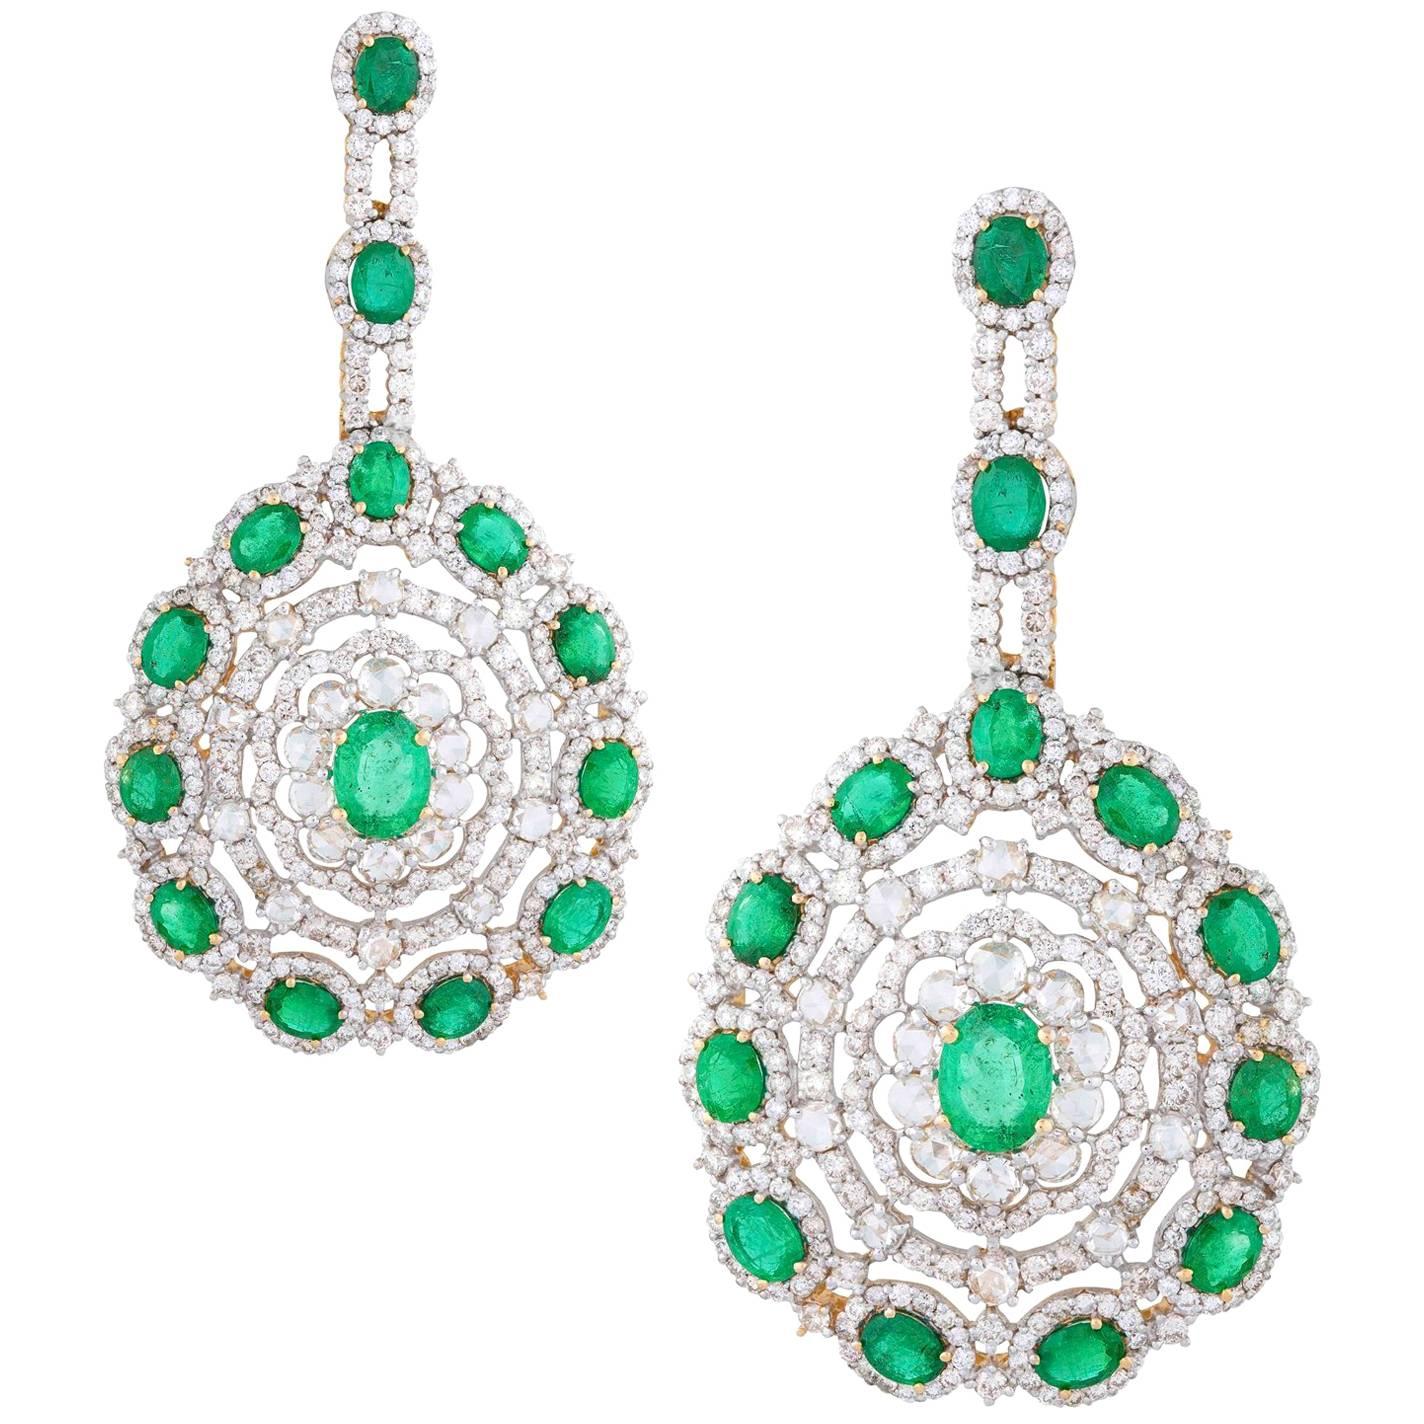 Zambian Emerald 10.26 ct and 9.62 ct Diamond Statement Earrings